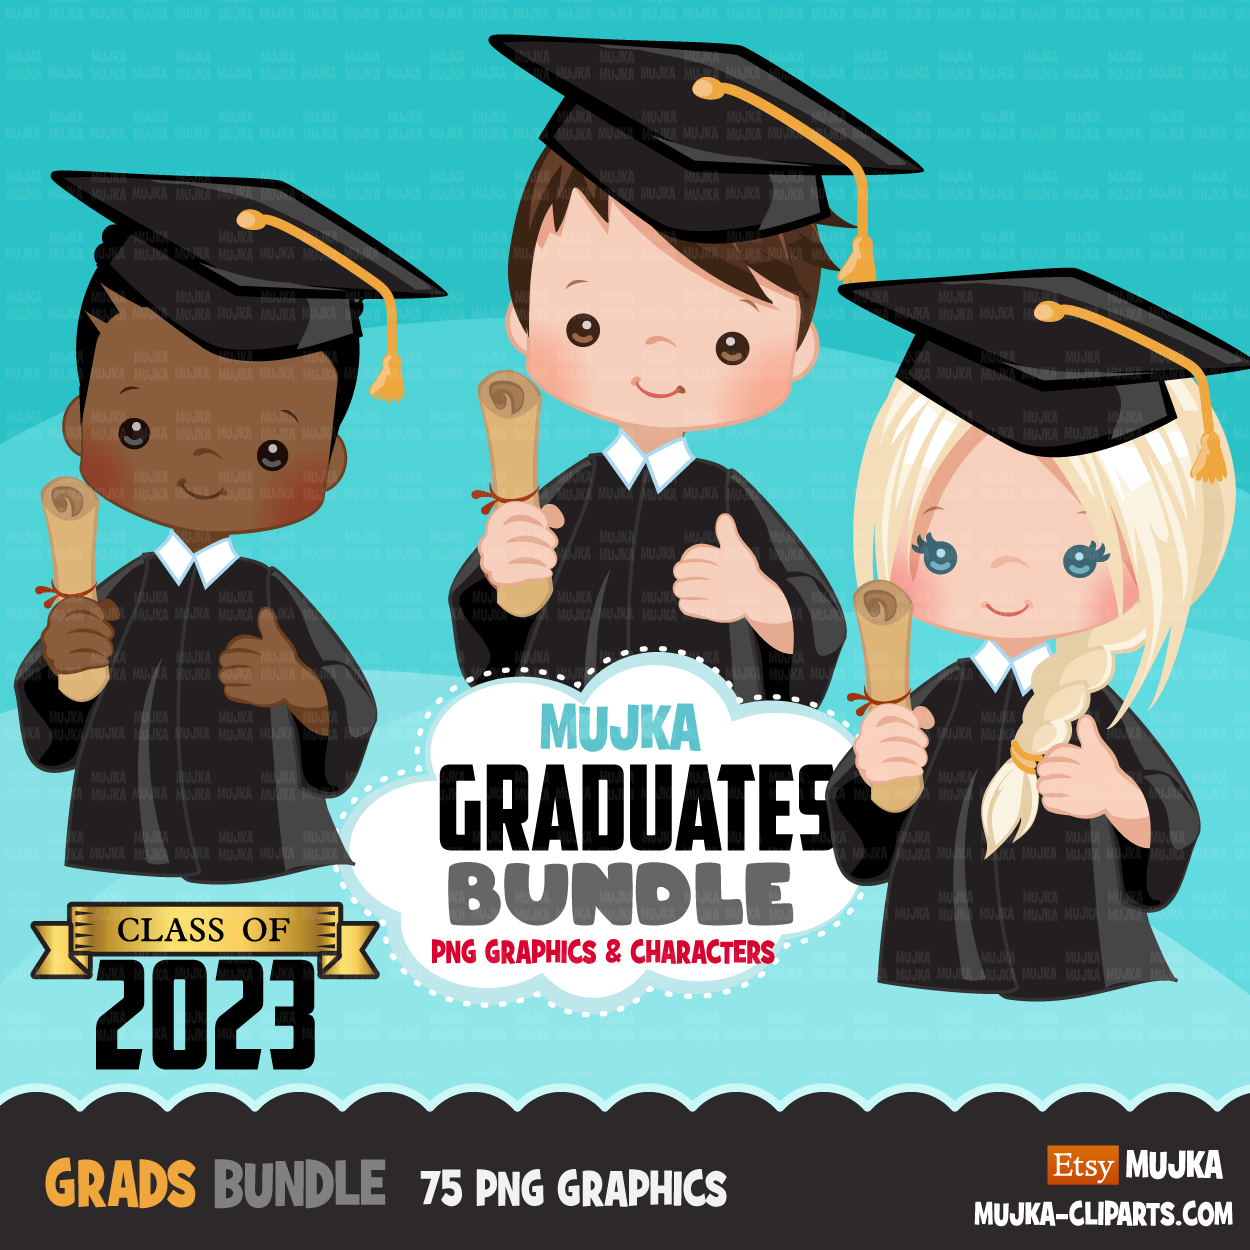 Graduation clipart bundle, grads sublimation designs digital download, school clipart class of 2023, png files for cricut, boy, girl